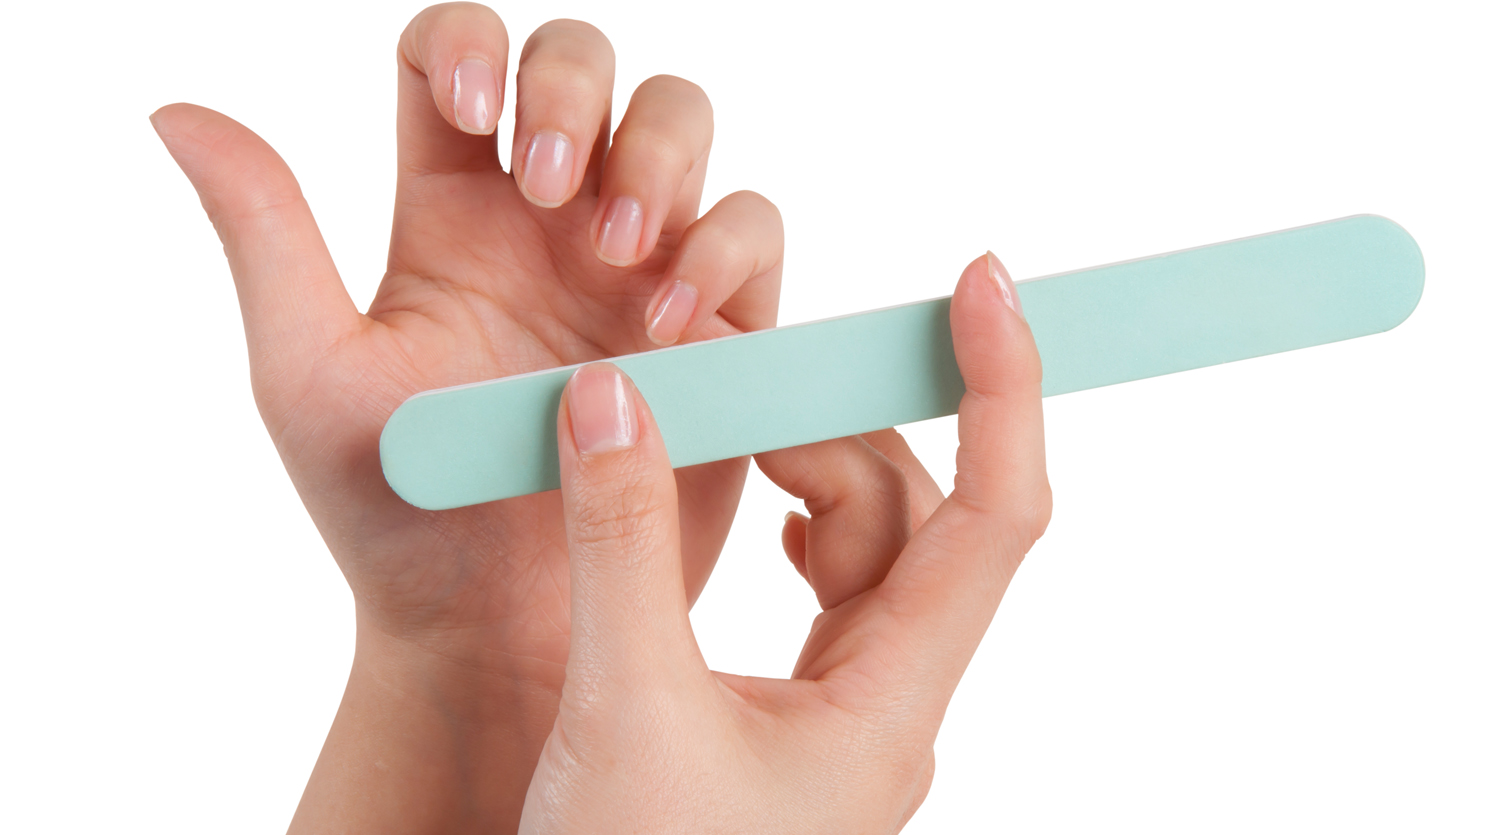 Mythos 4: Brüchige Nägel sind ein Zeichen für schlechte Nagelpflege